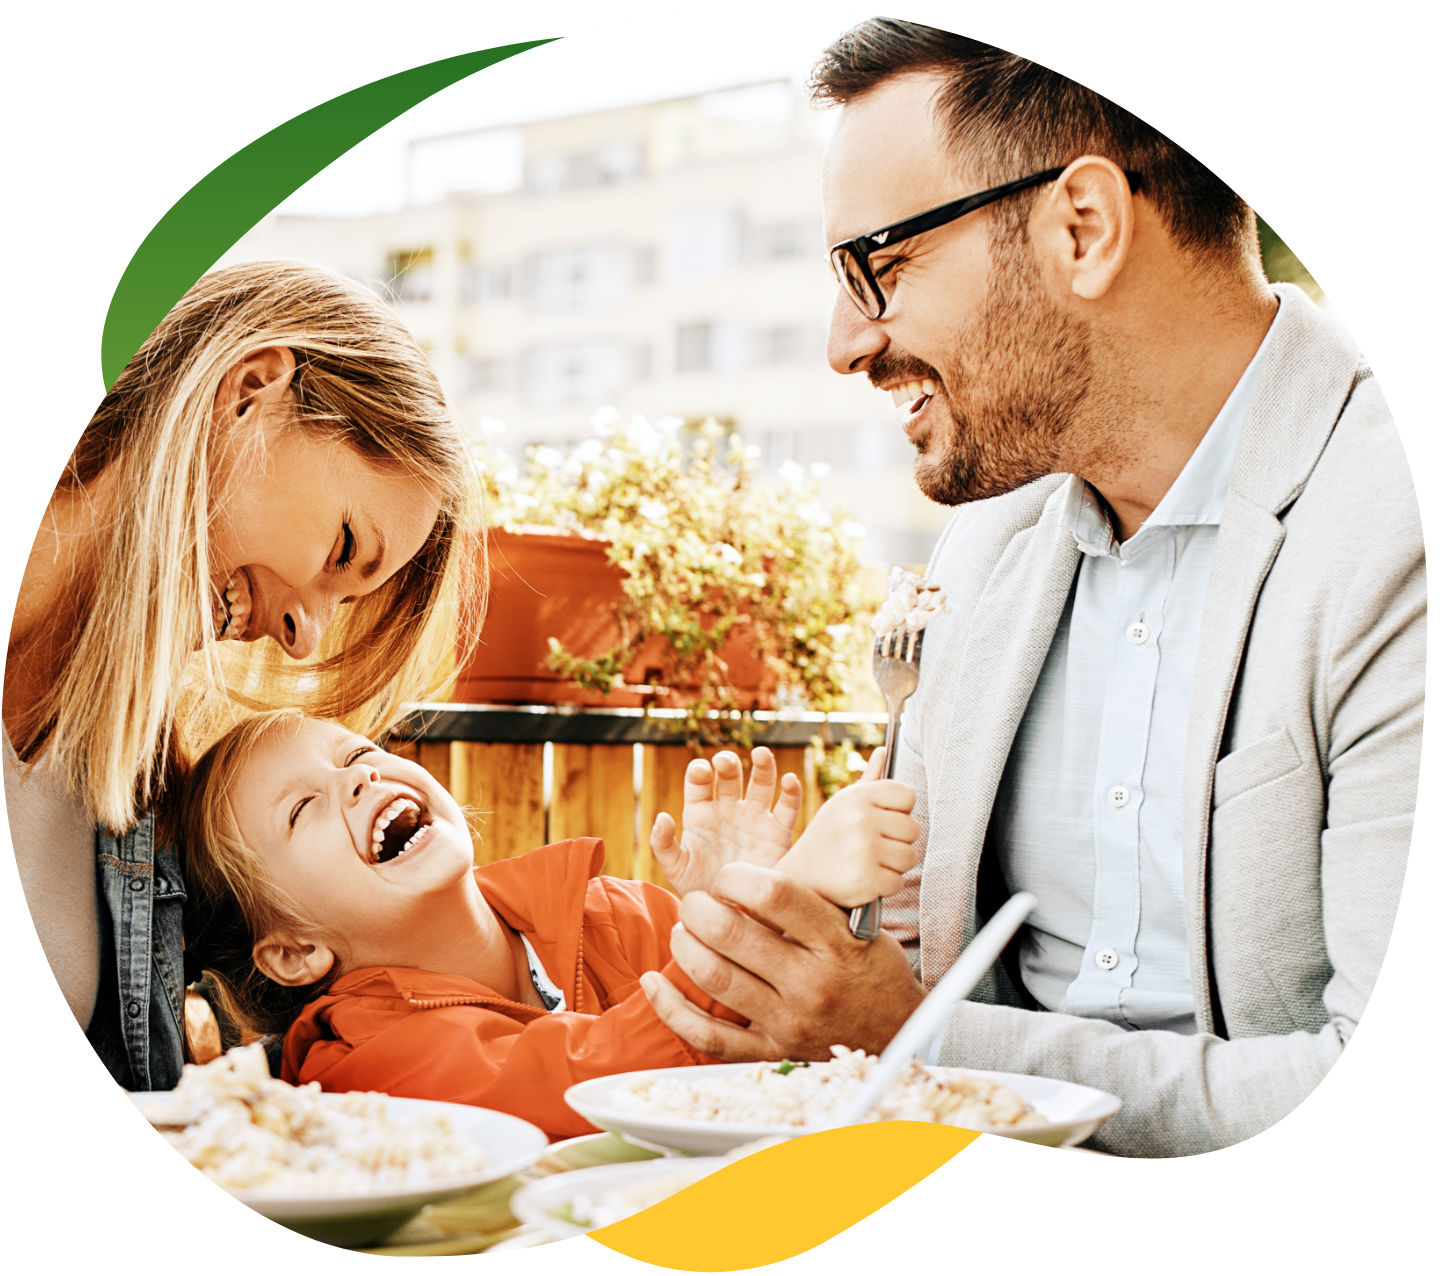 Tööriietes noored vanemad söövad söögilaua ääres, nende vahel istub laps. Nad naeravad ja neil on koos tore.